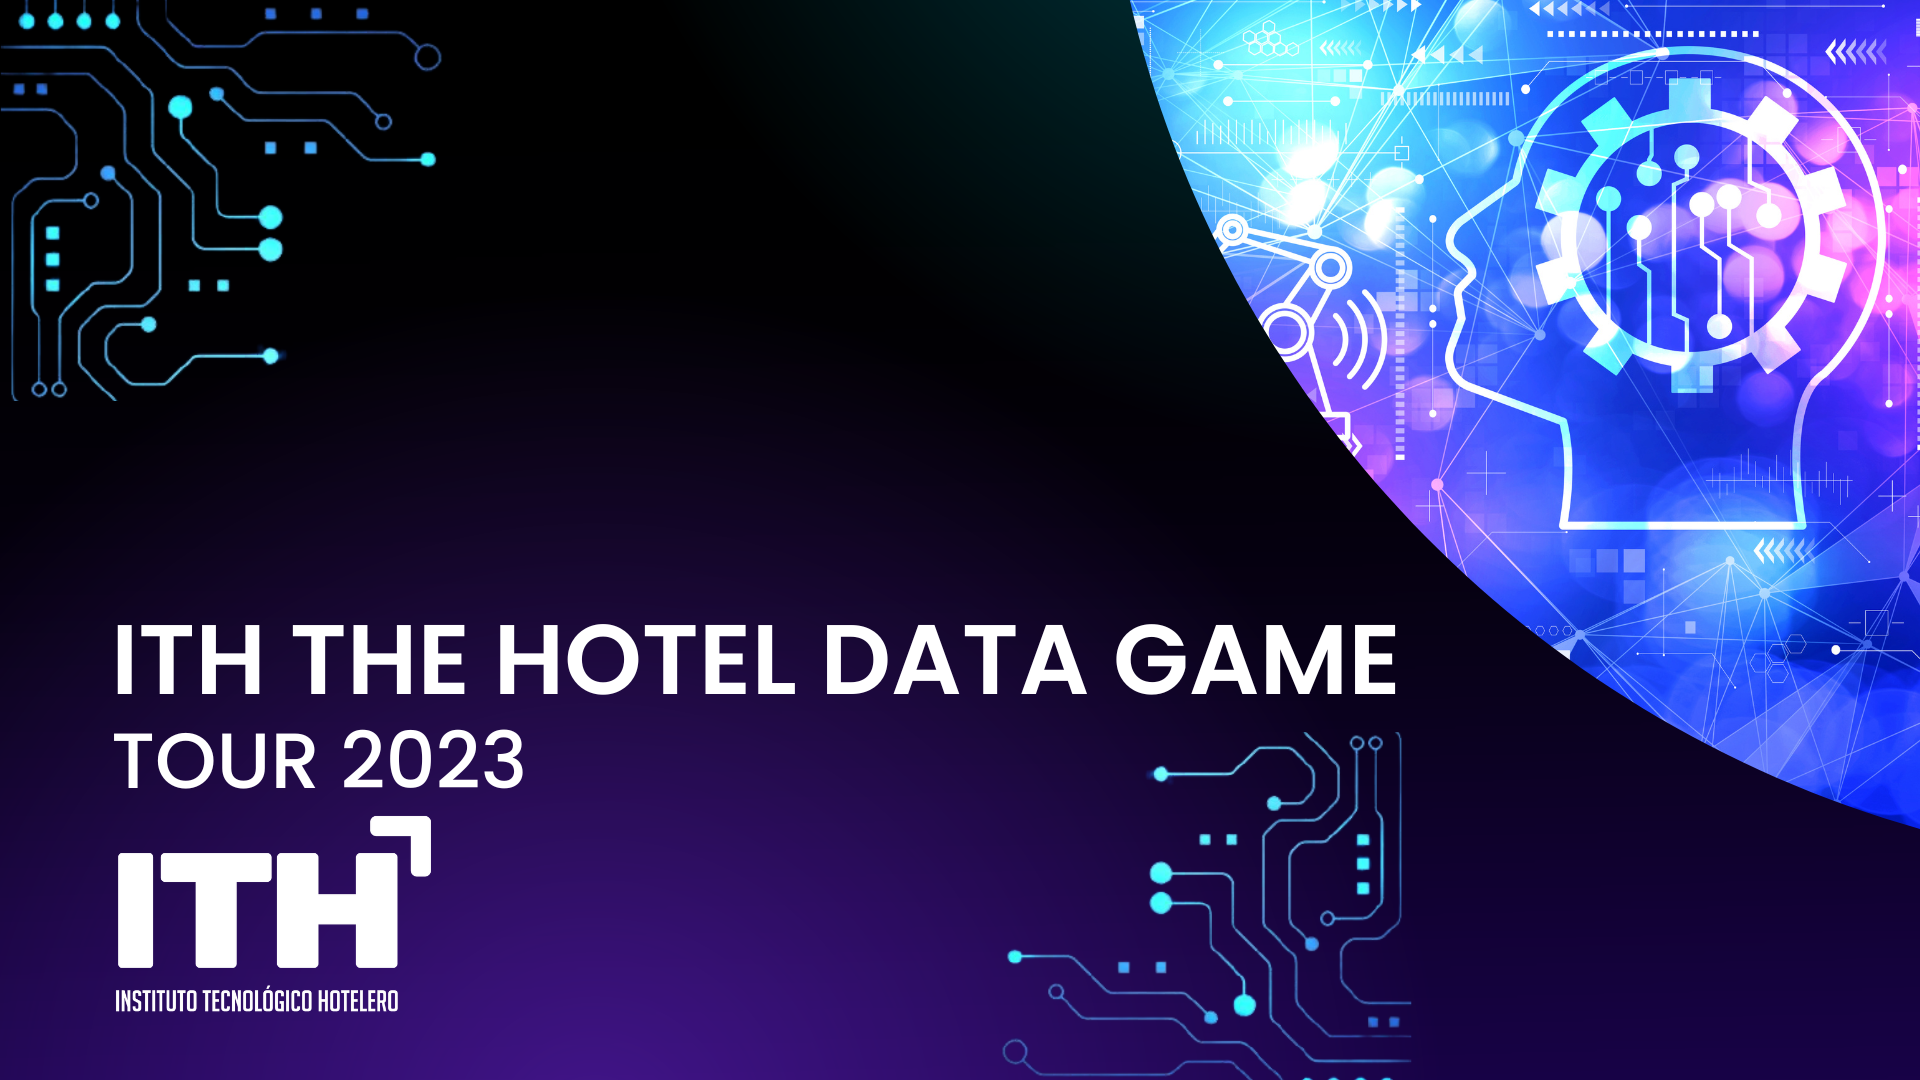 ITH The Hotel Data Game. Tour 2023 - Digitalización e inteligencia del dato para la recuperación @ SEVILLA | Costa Teguise | Canarias | España